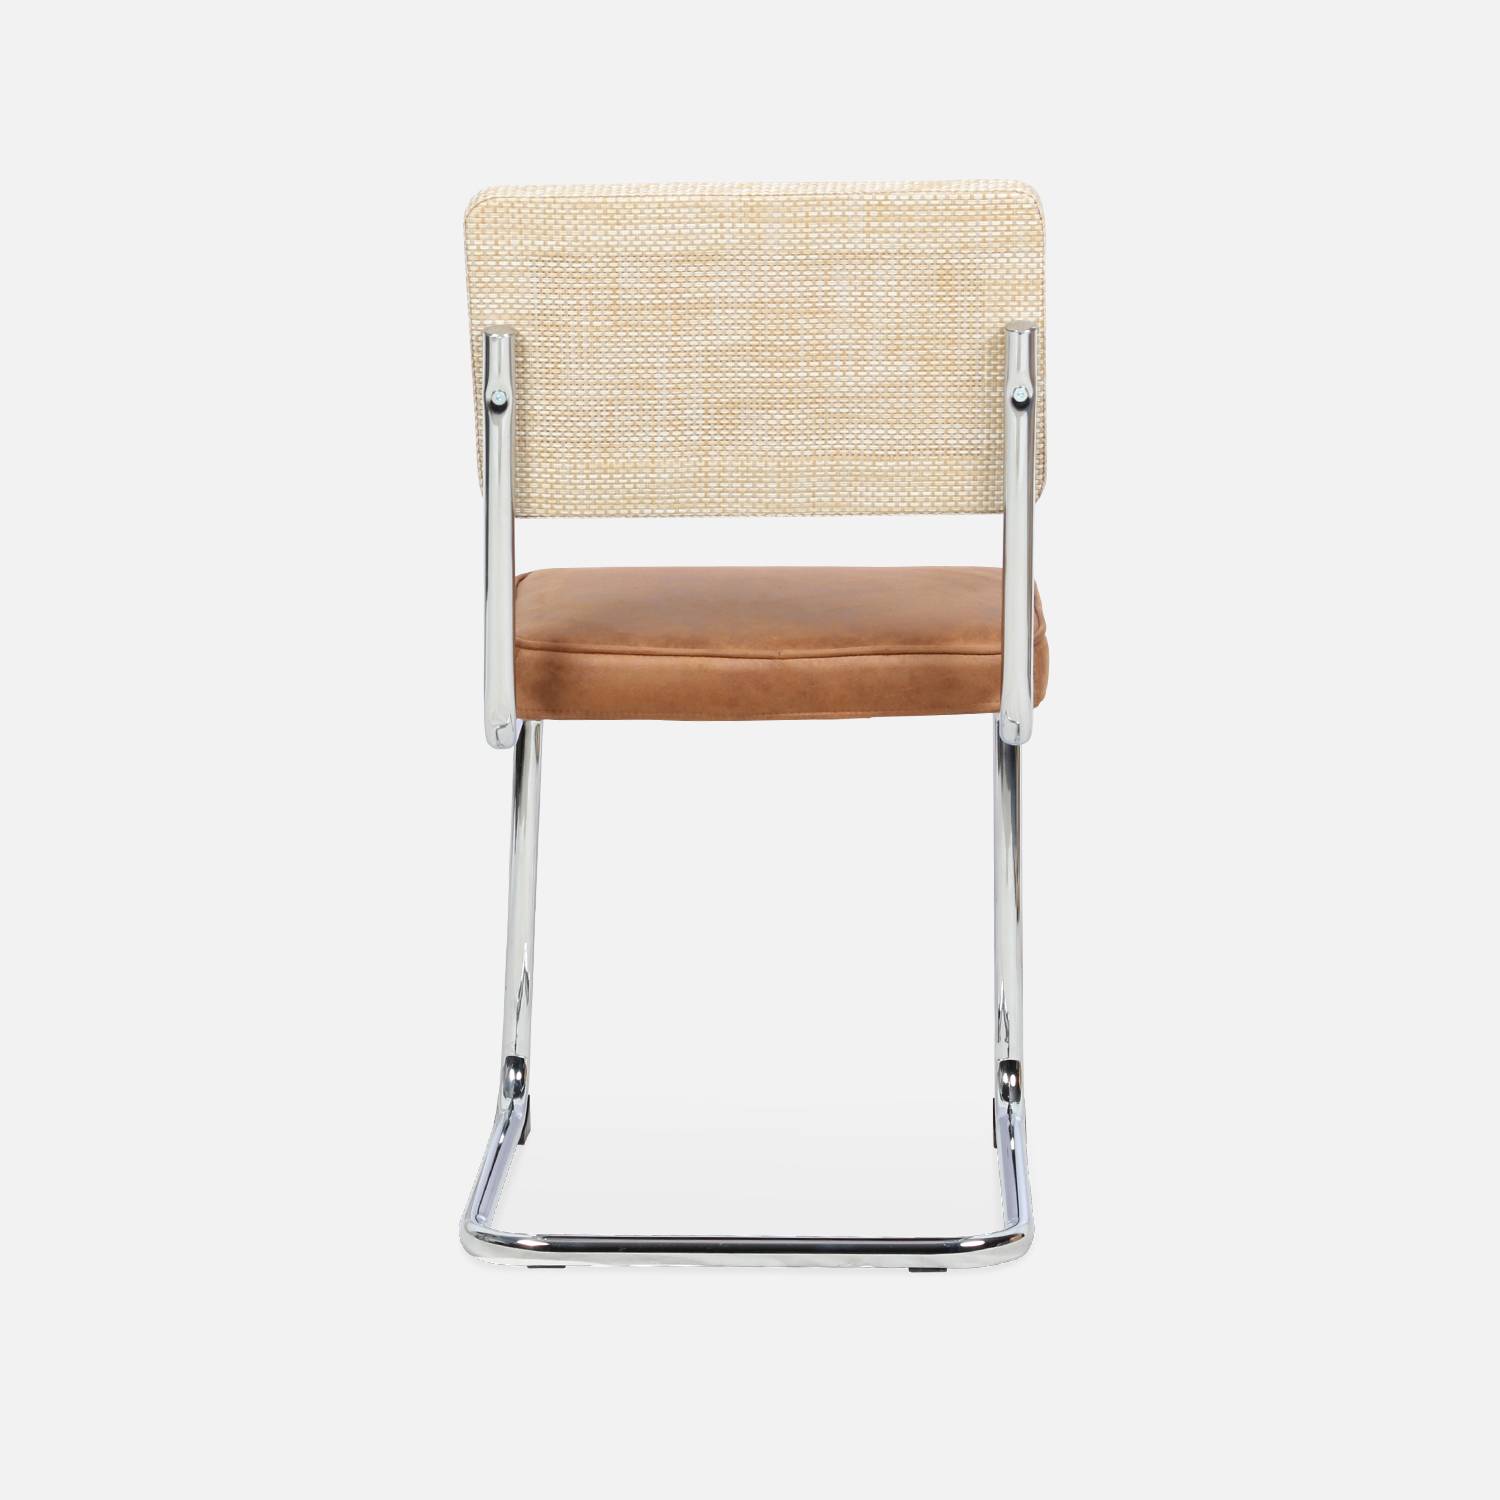 2 chaises cantilever - Maja - tissu marron et résine, 46 x 54,5 x 84,5cm   Photo9